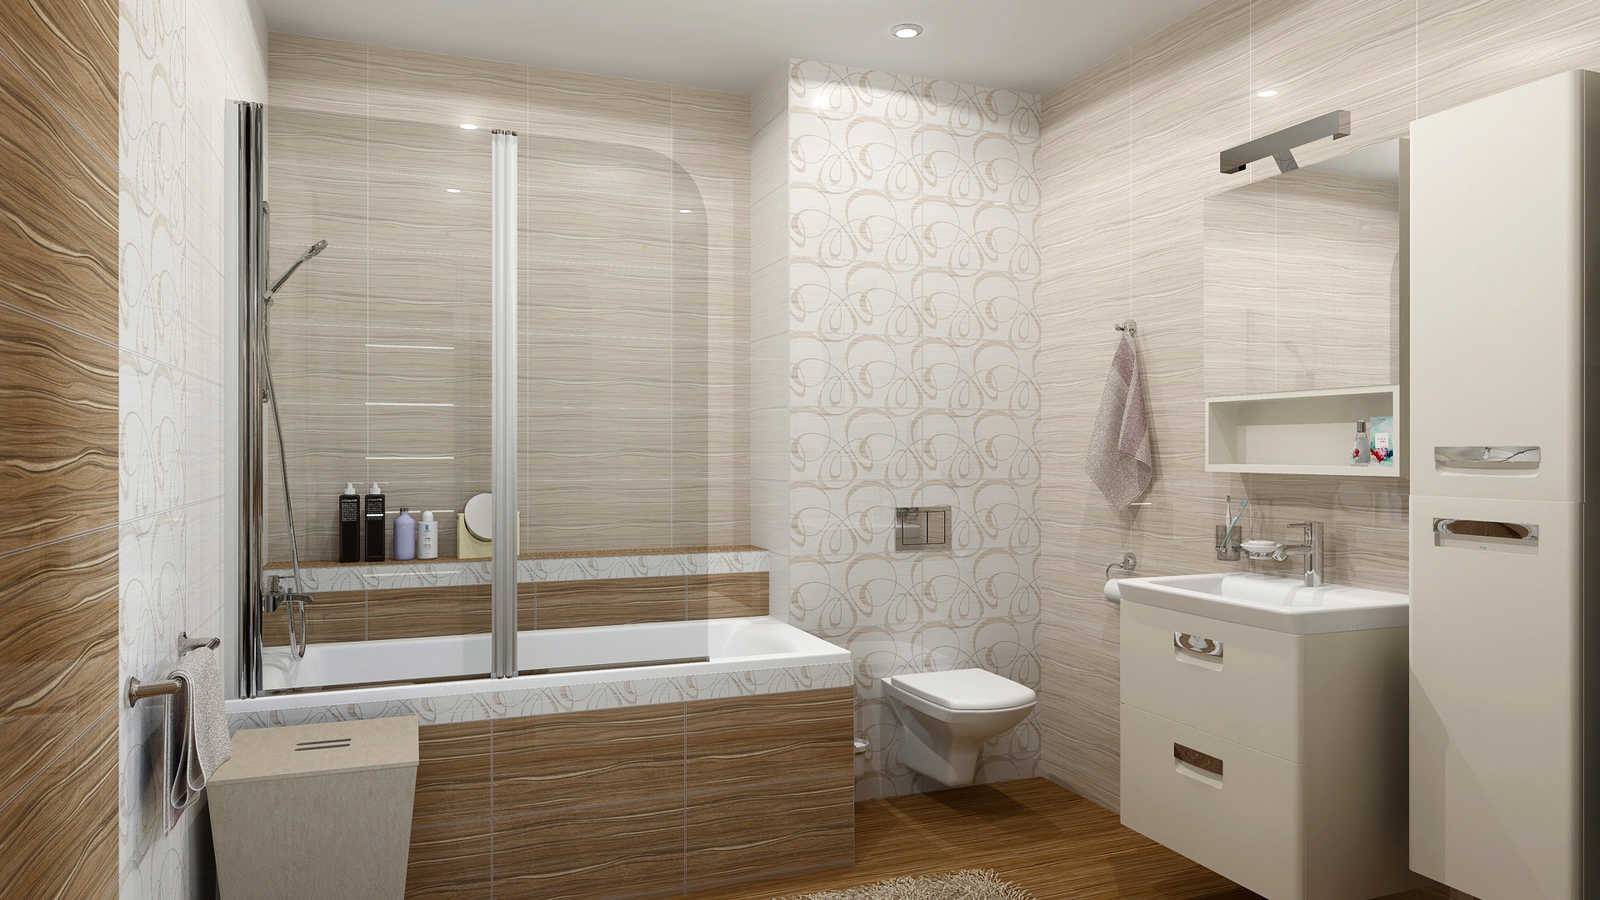 Плитка керамическая для душа и ванной комнаты, особенности выбора